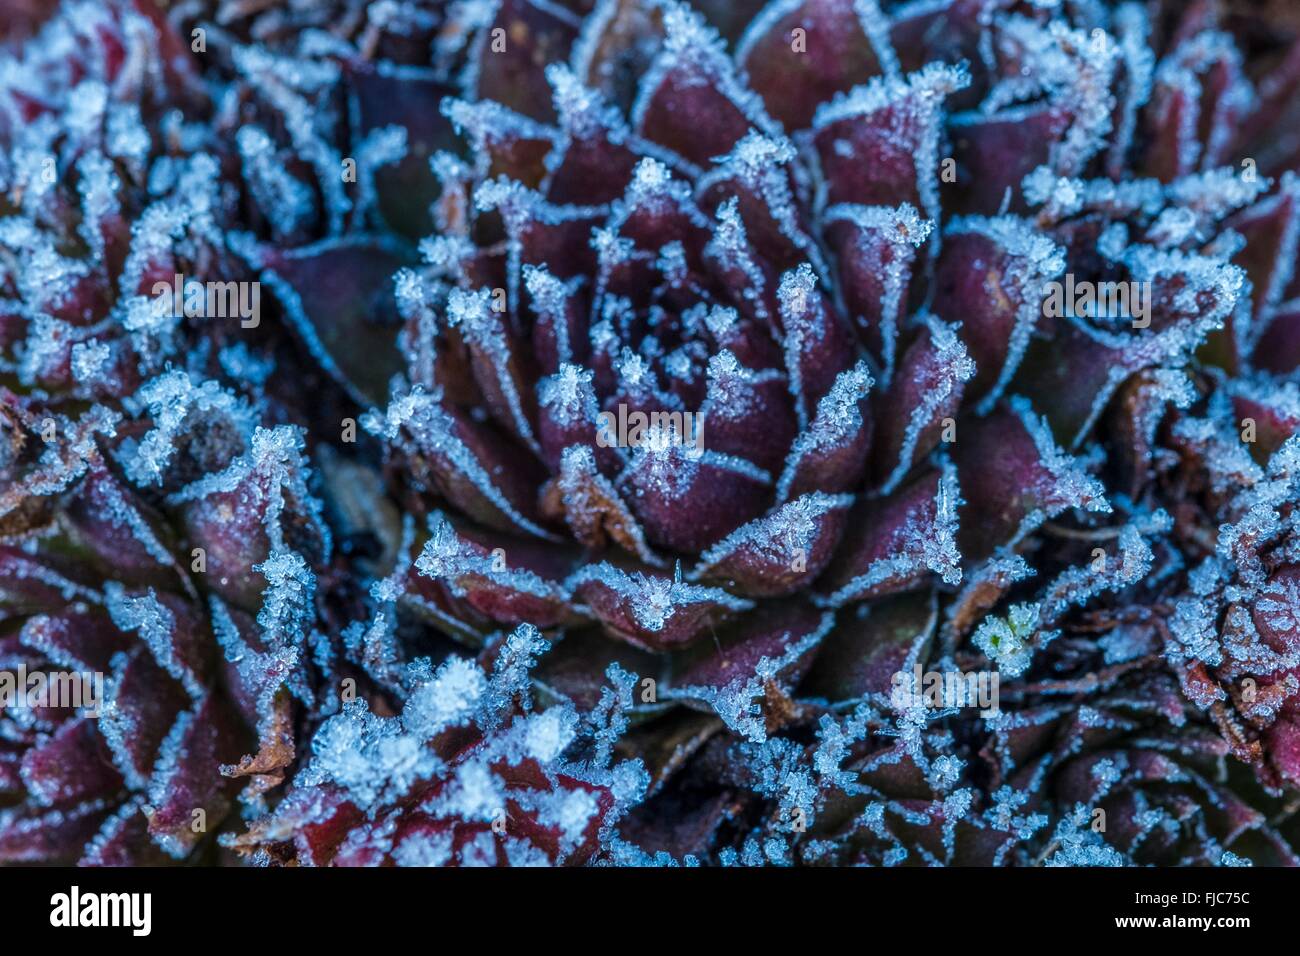 Sempervivum tectorum - common houseleek, covered in frost crystals. Stock Photo